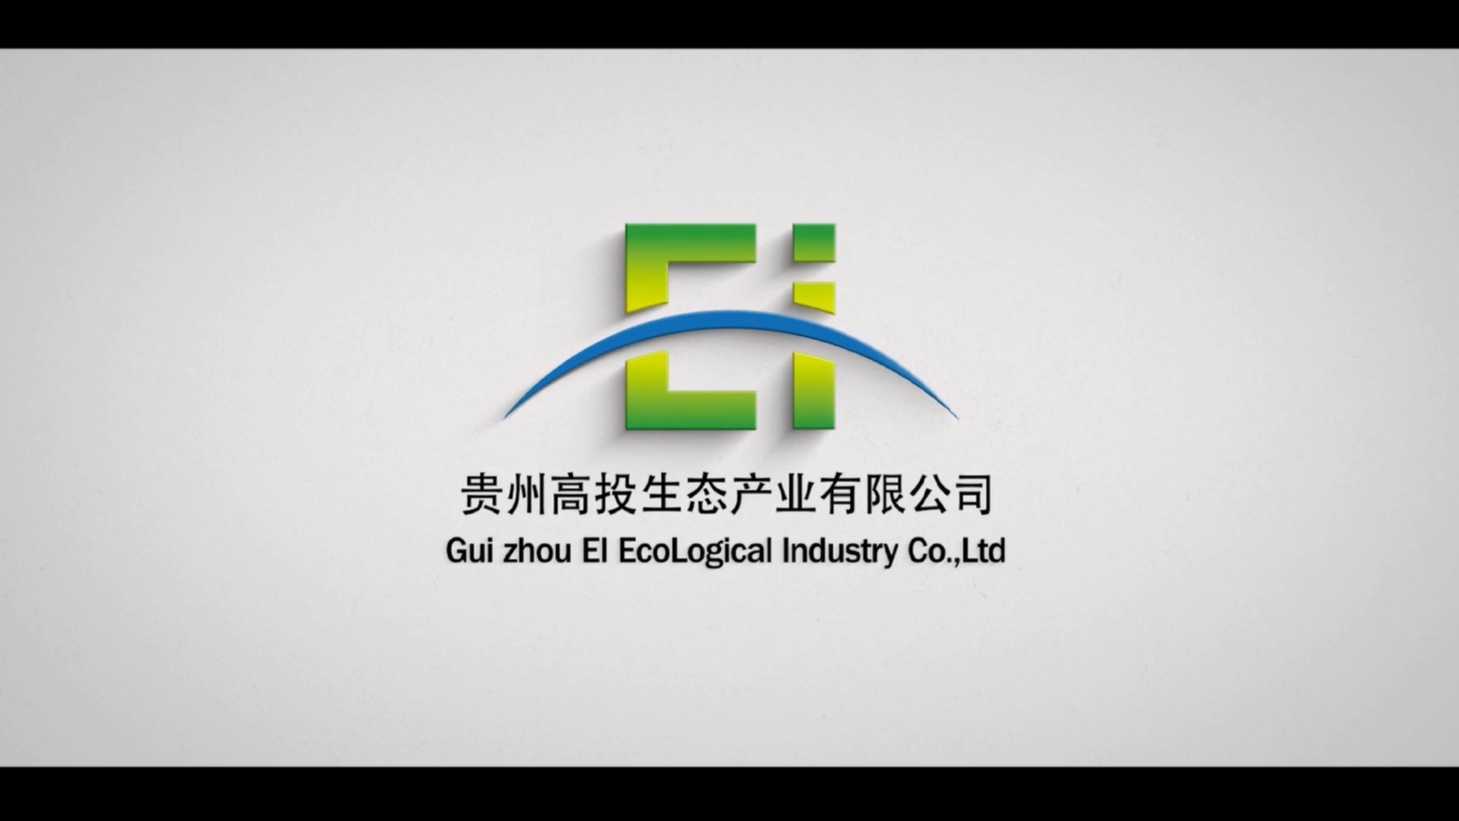 贵州高投生态产业有限公司企业宣传片  梵曲配音